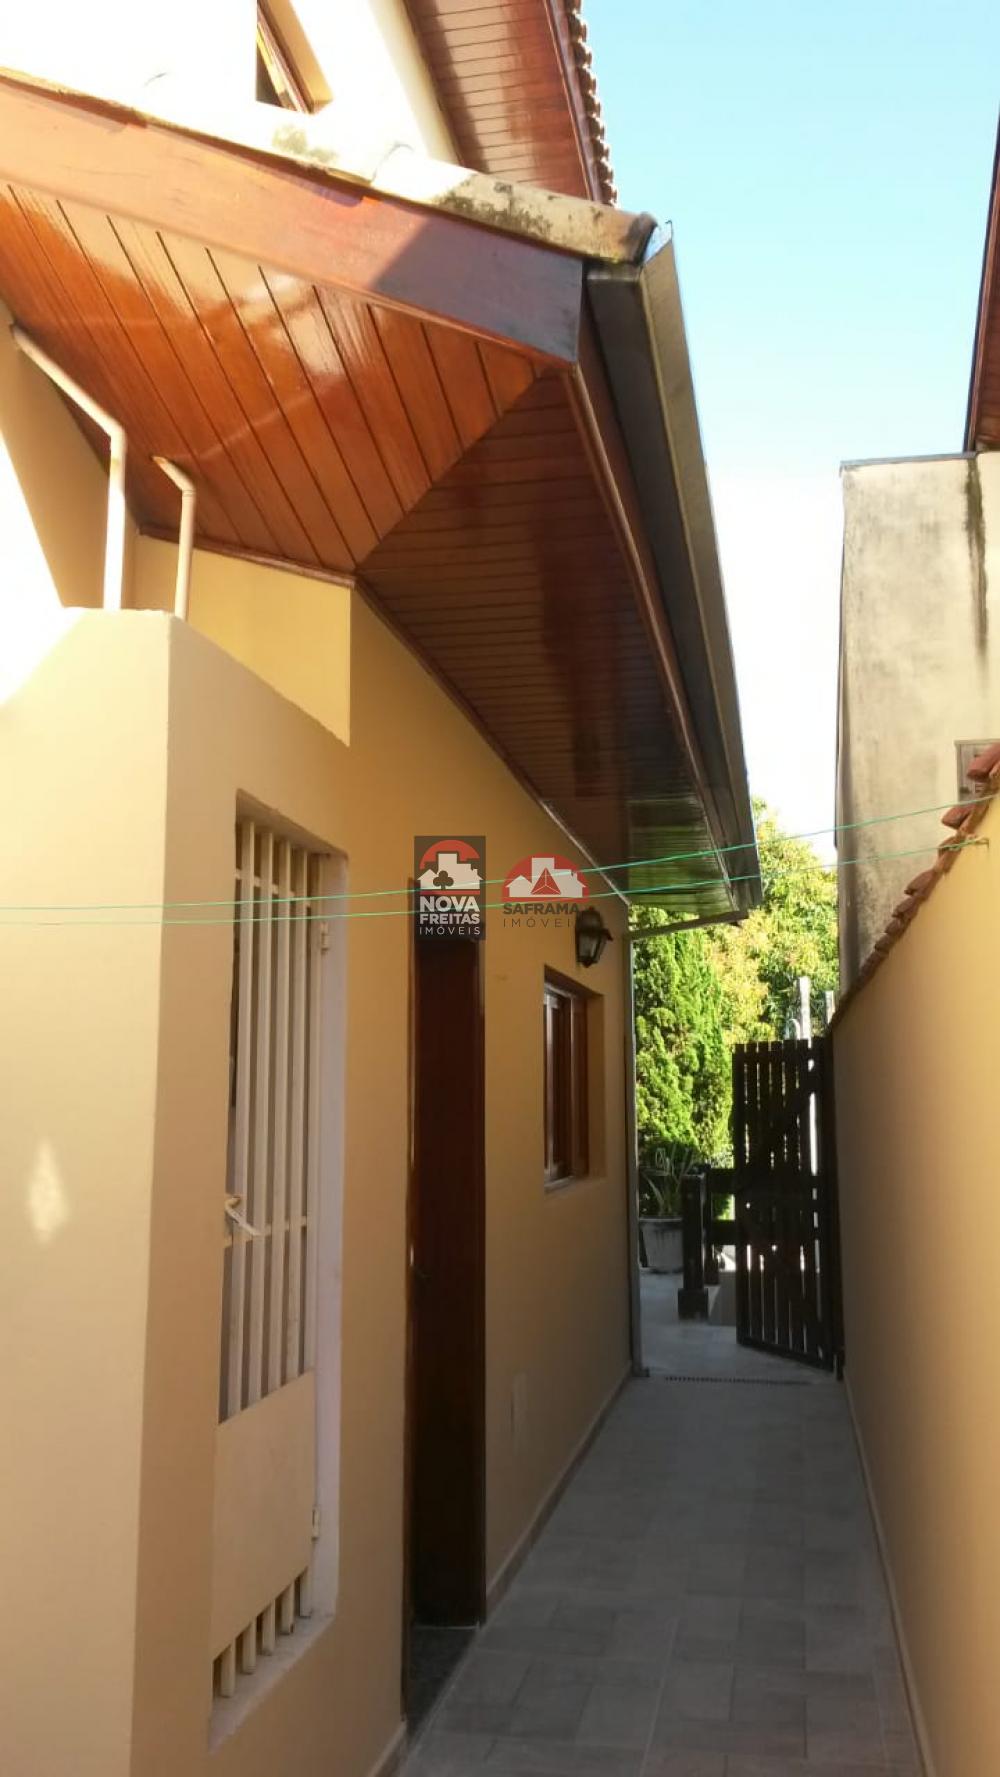 Alugar Casa / Sobrado Condomínio em São José dos Campos R$ 5.450,00 - Foto 6